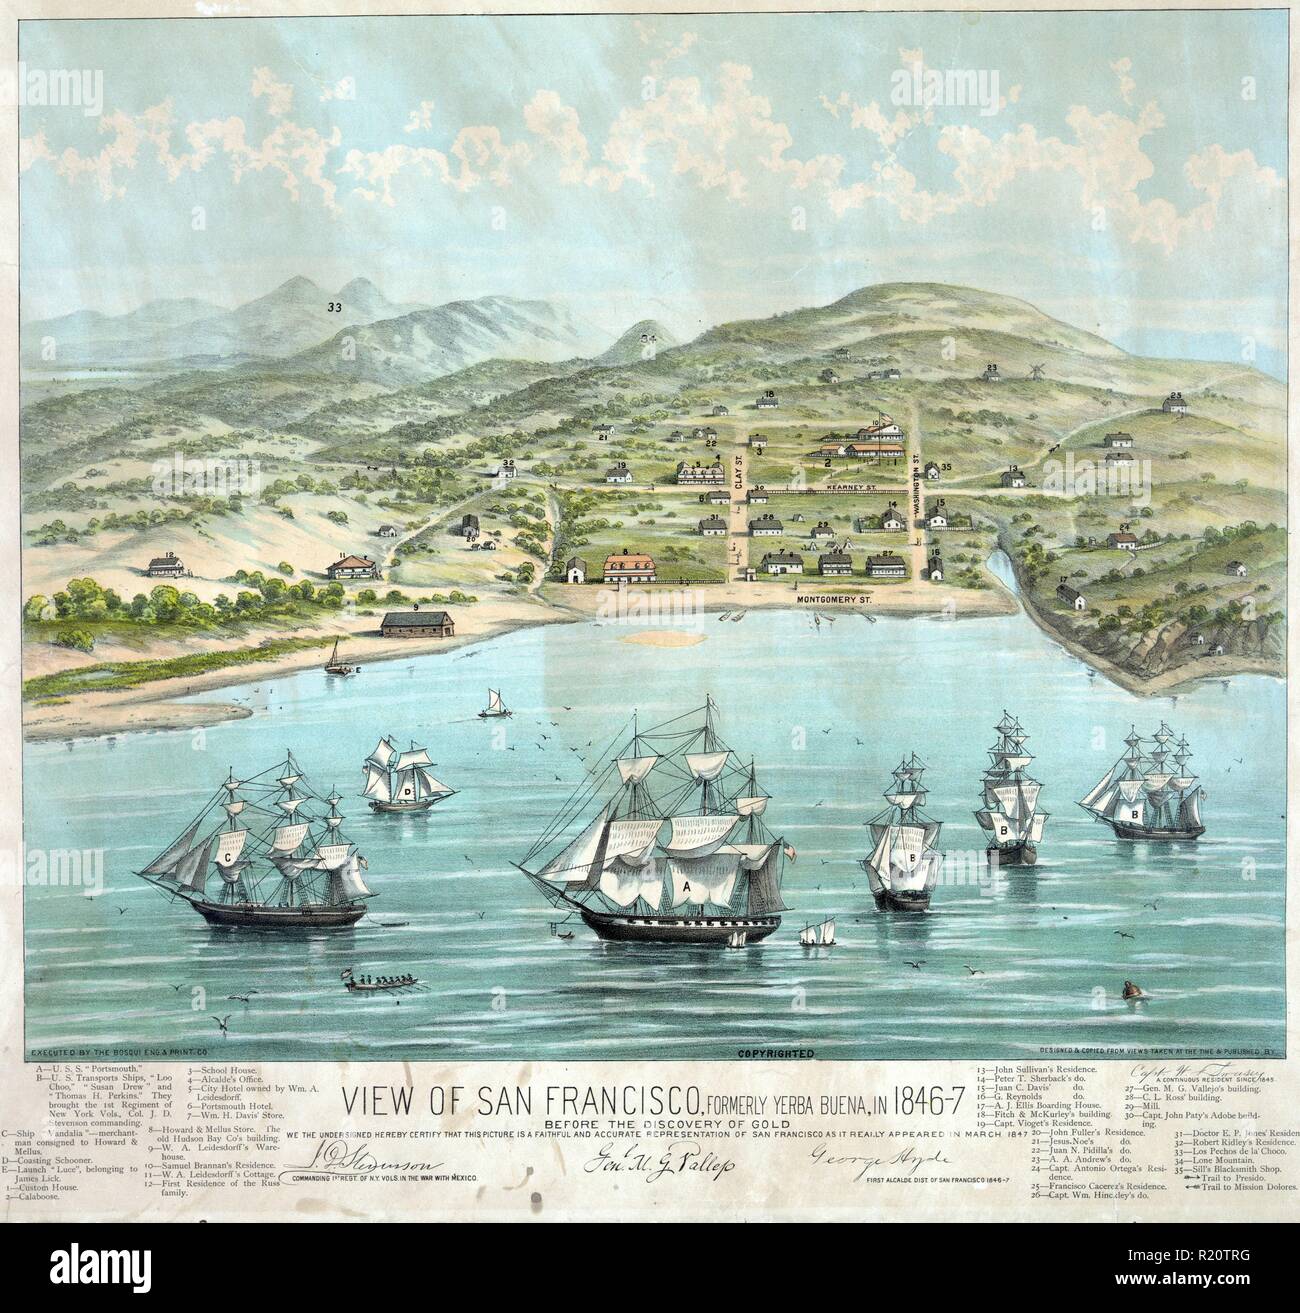 Farbe drucken von San Francisco, formal Yerba Buena während des 1840 s, vor der Entdeckung des Goldes. Datierte 1884 Stockfoto